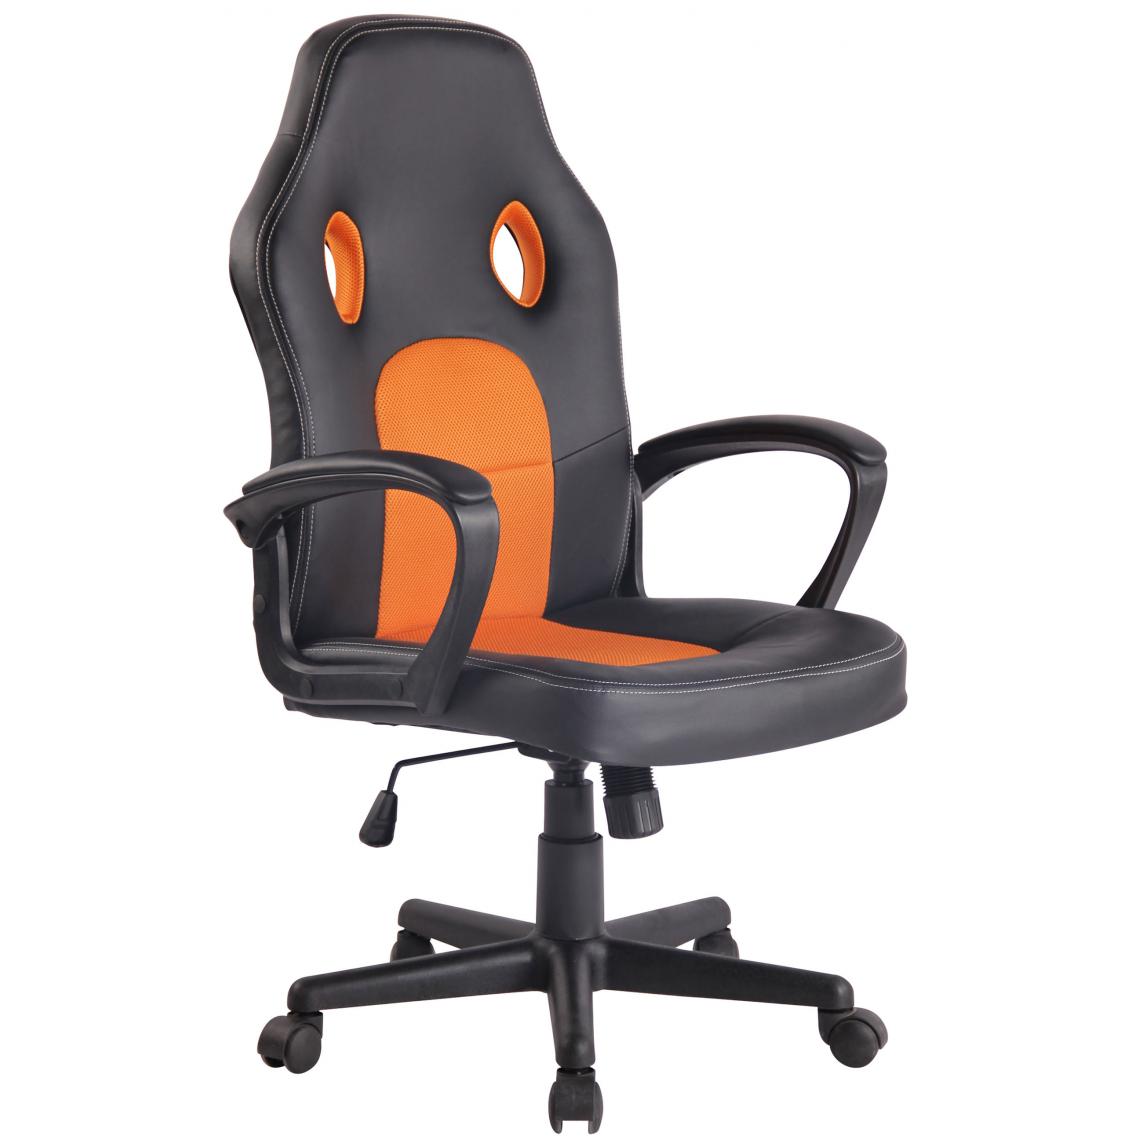 Icaverne - Splendide Chaise de bureau reference Panama couleur noir / orange - Chaises